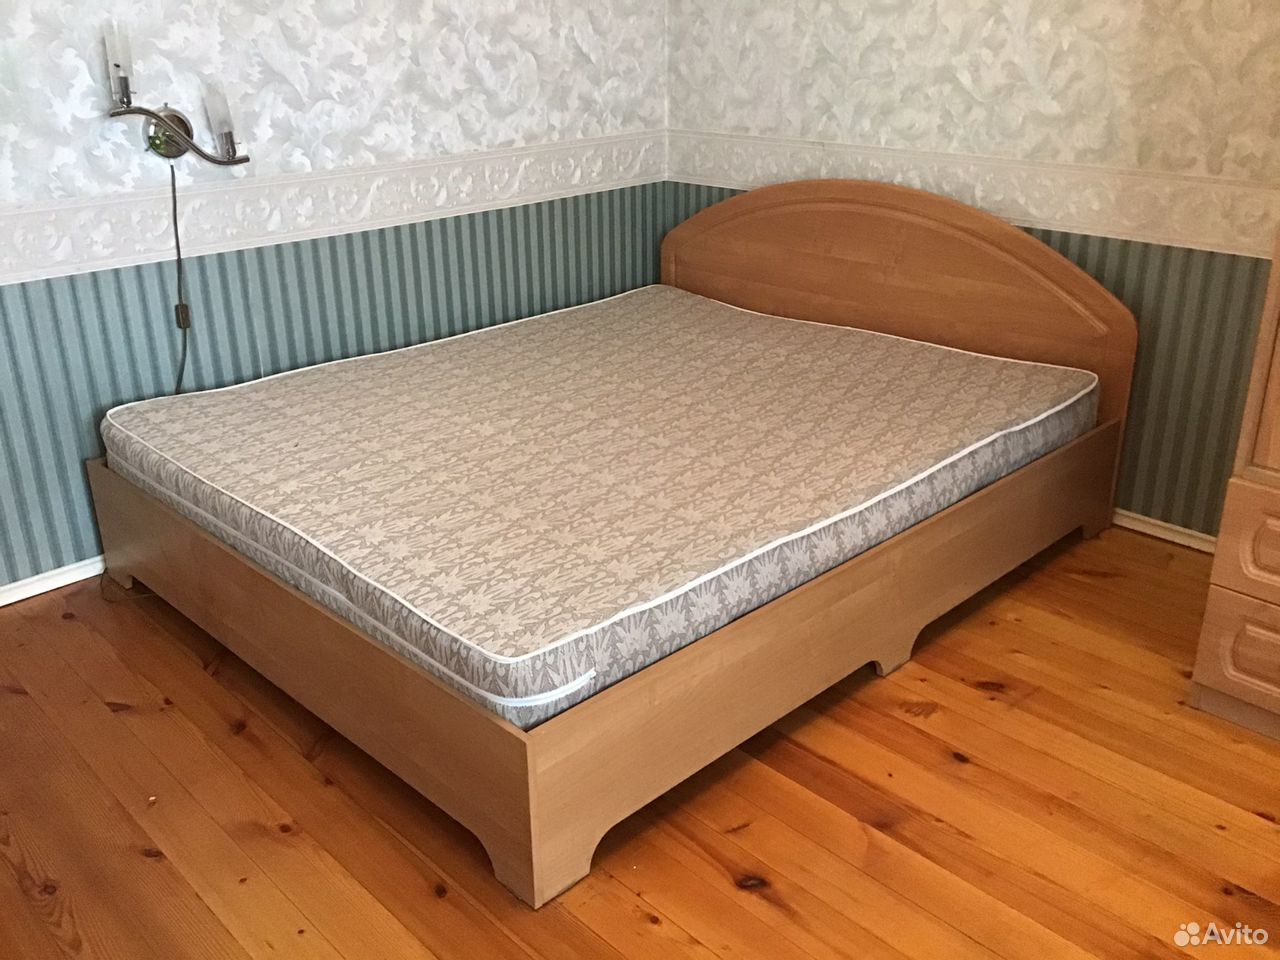 Кровать двухспальная тумбочки 89050618800 купить 3